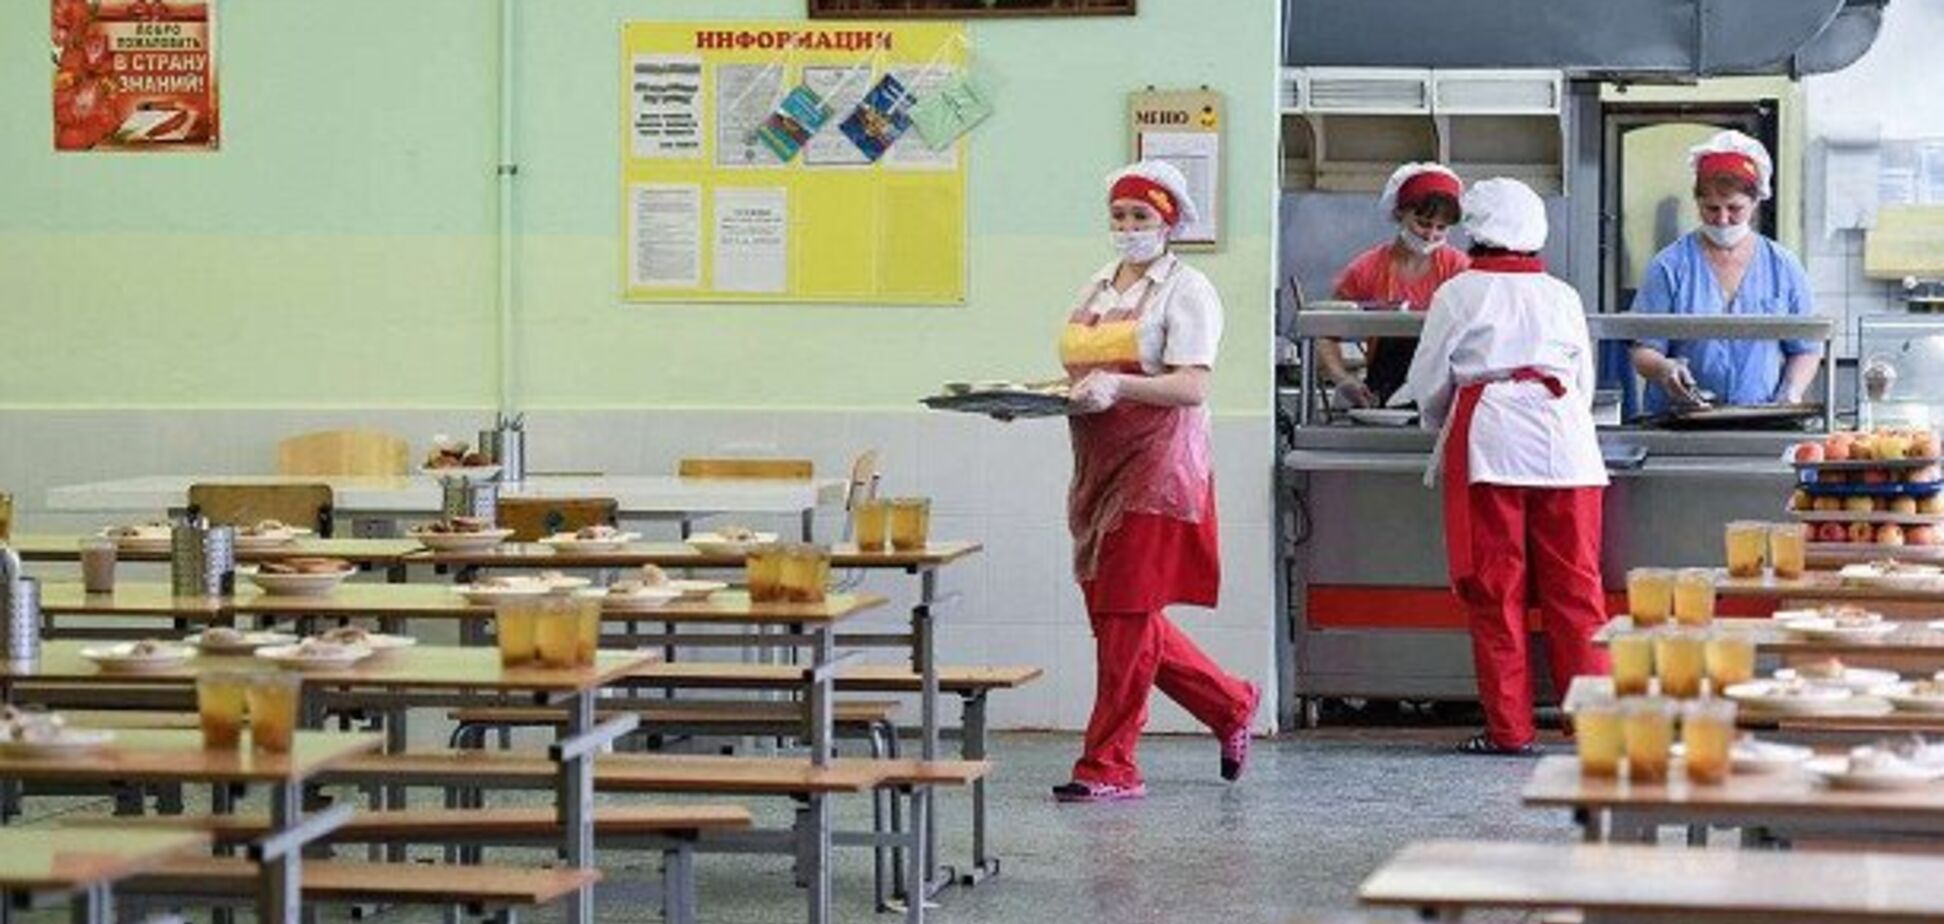 Под Киевом маме больного ребенка запретили заходить в школьную столовую: возник скандал